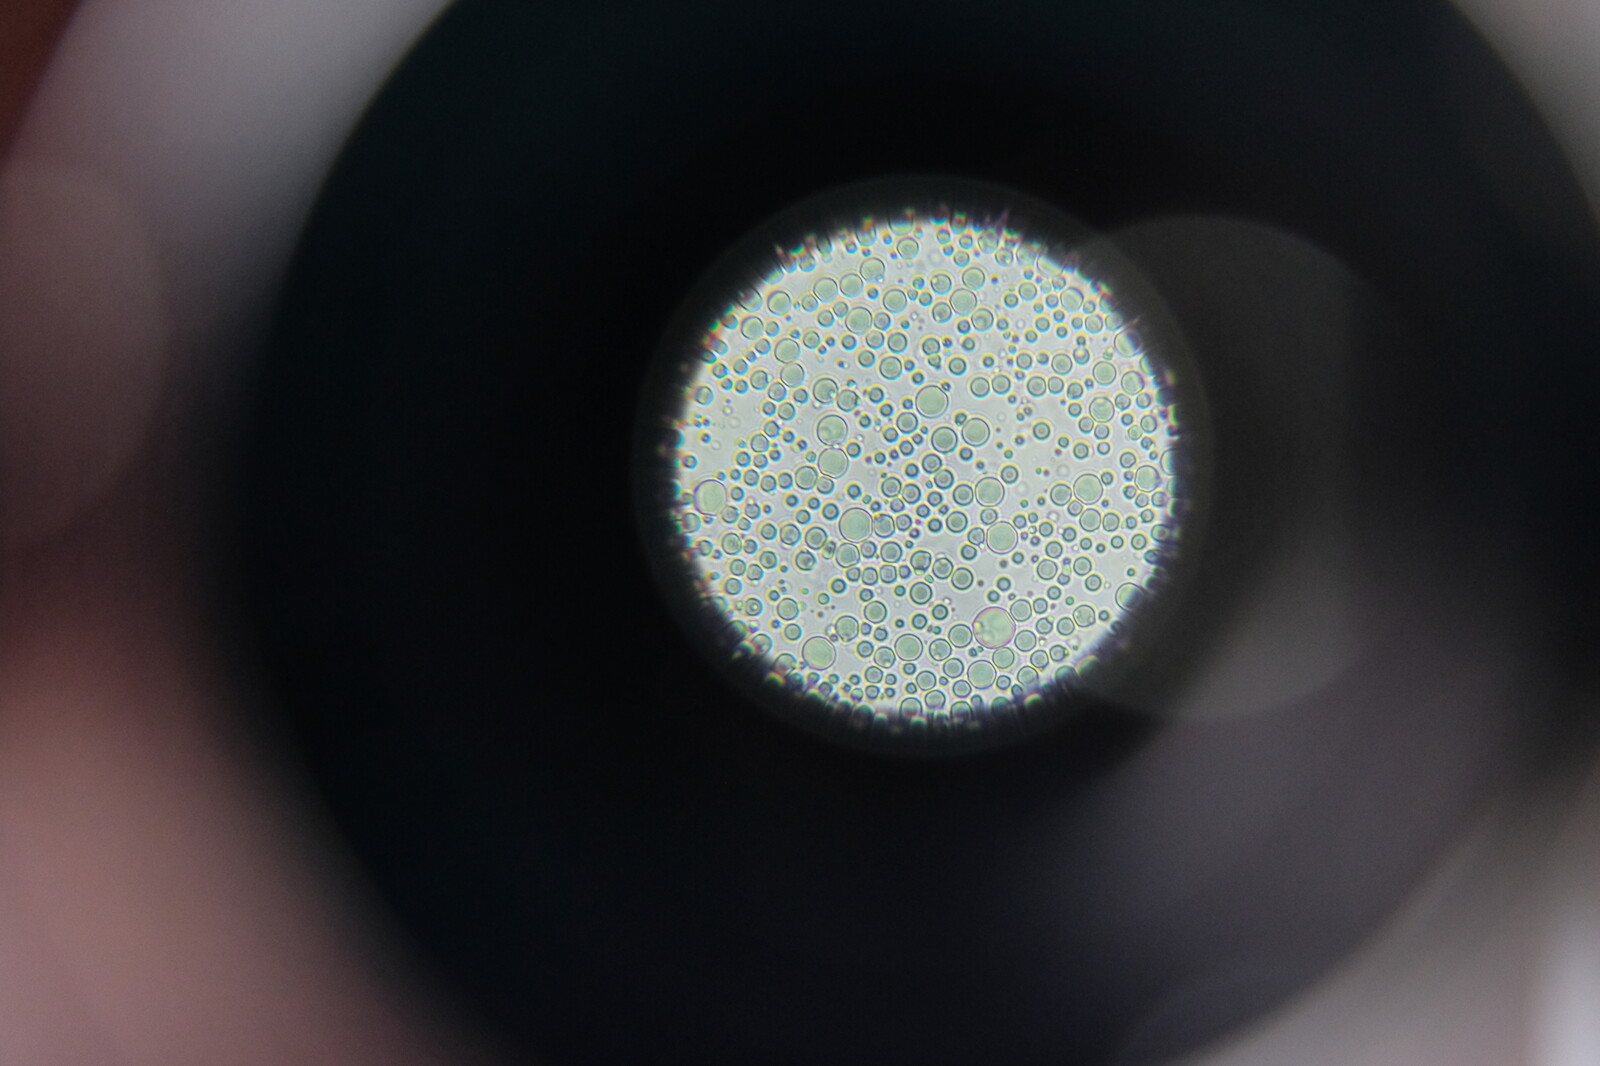 microscopic image of milk